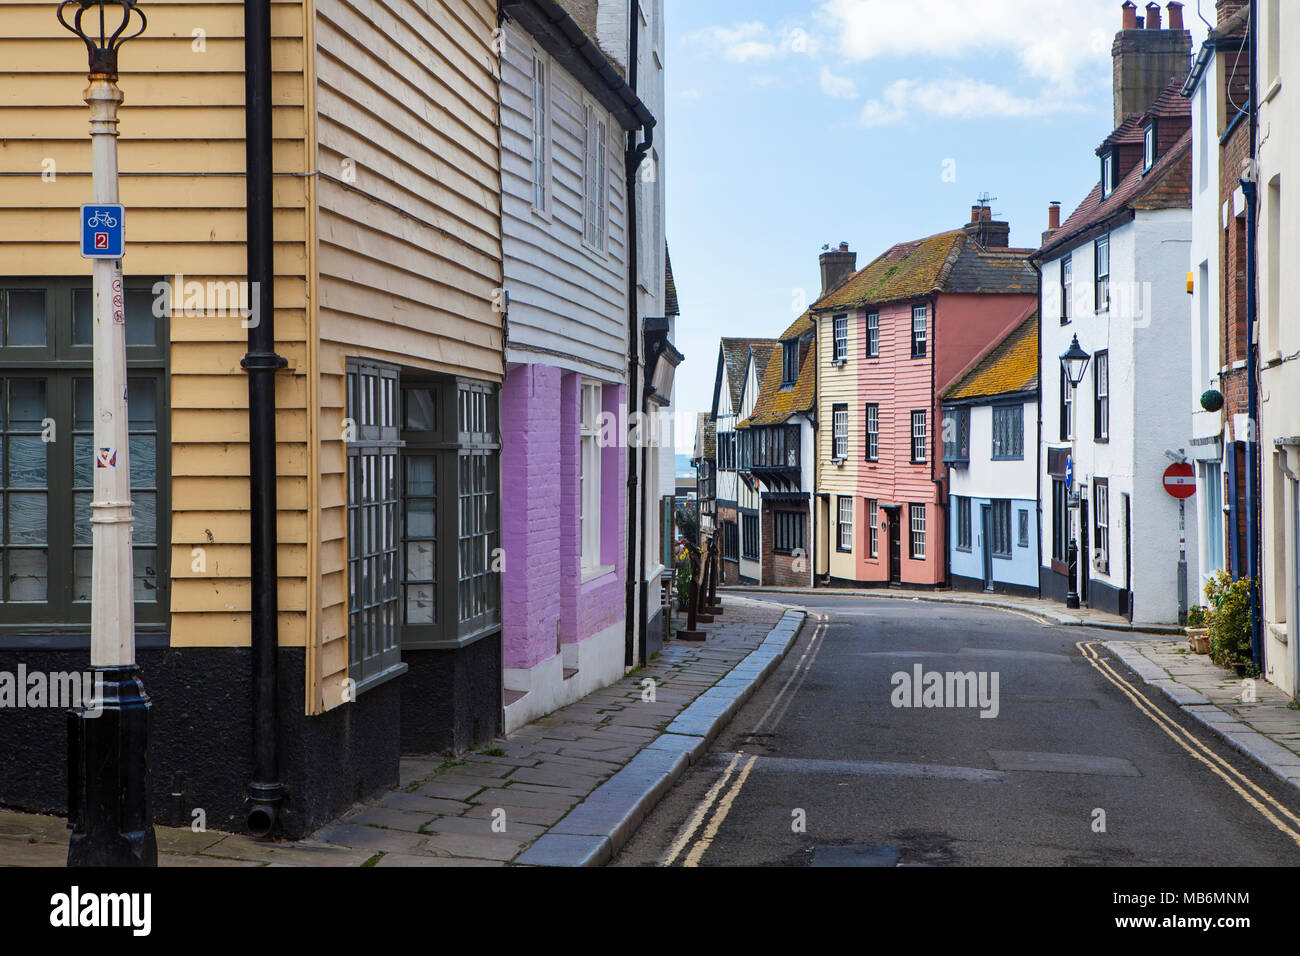 HASTINGS, Großbritannien - 5. APRIL 2018: Blick auf die ruhige Straße in der Küstenstadt Hastings mit traditionellen Haus. Hastings ist eine historische Stadt für die 10 bekannten Stockfoto